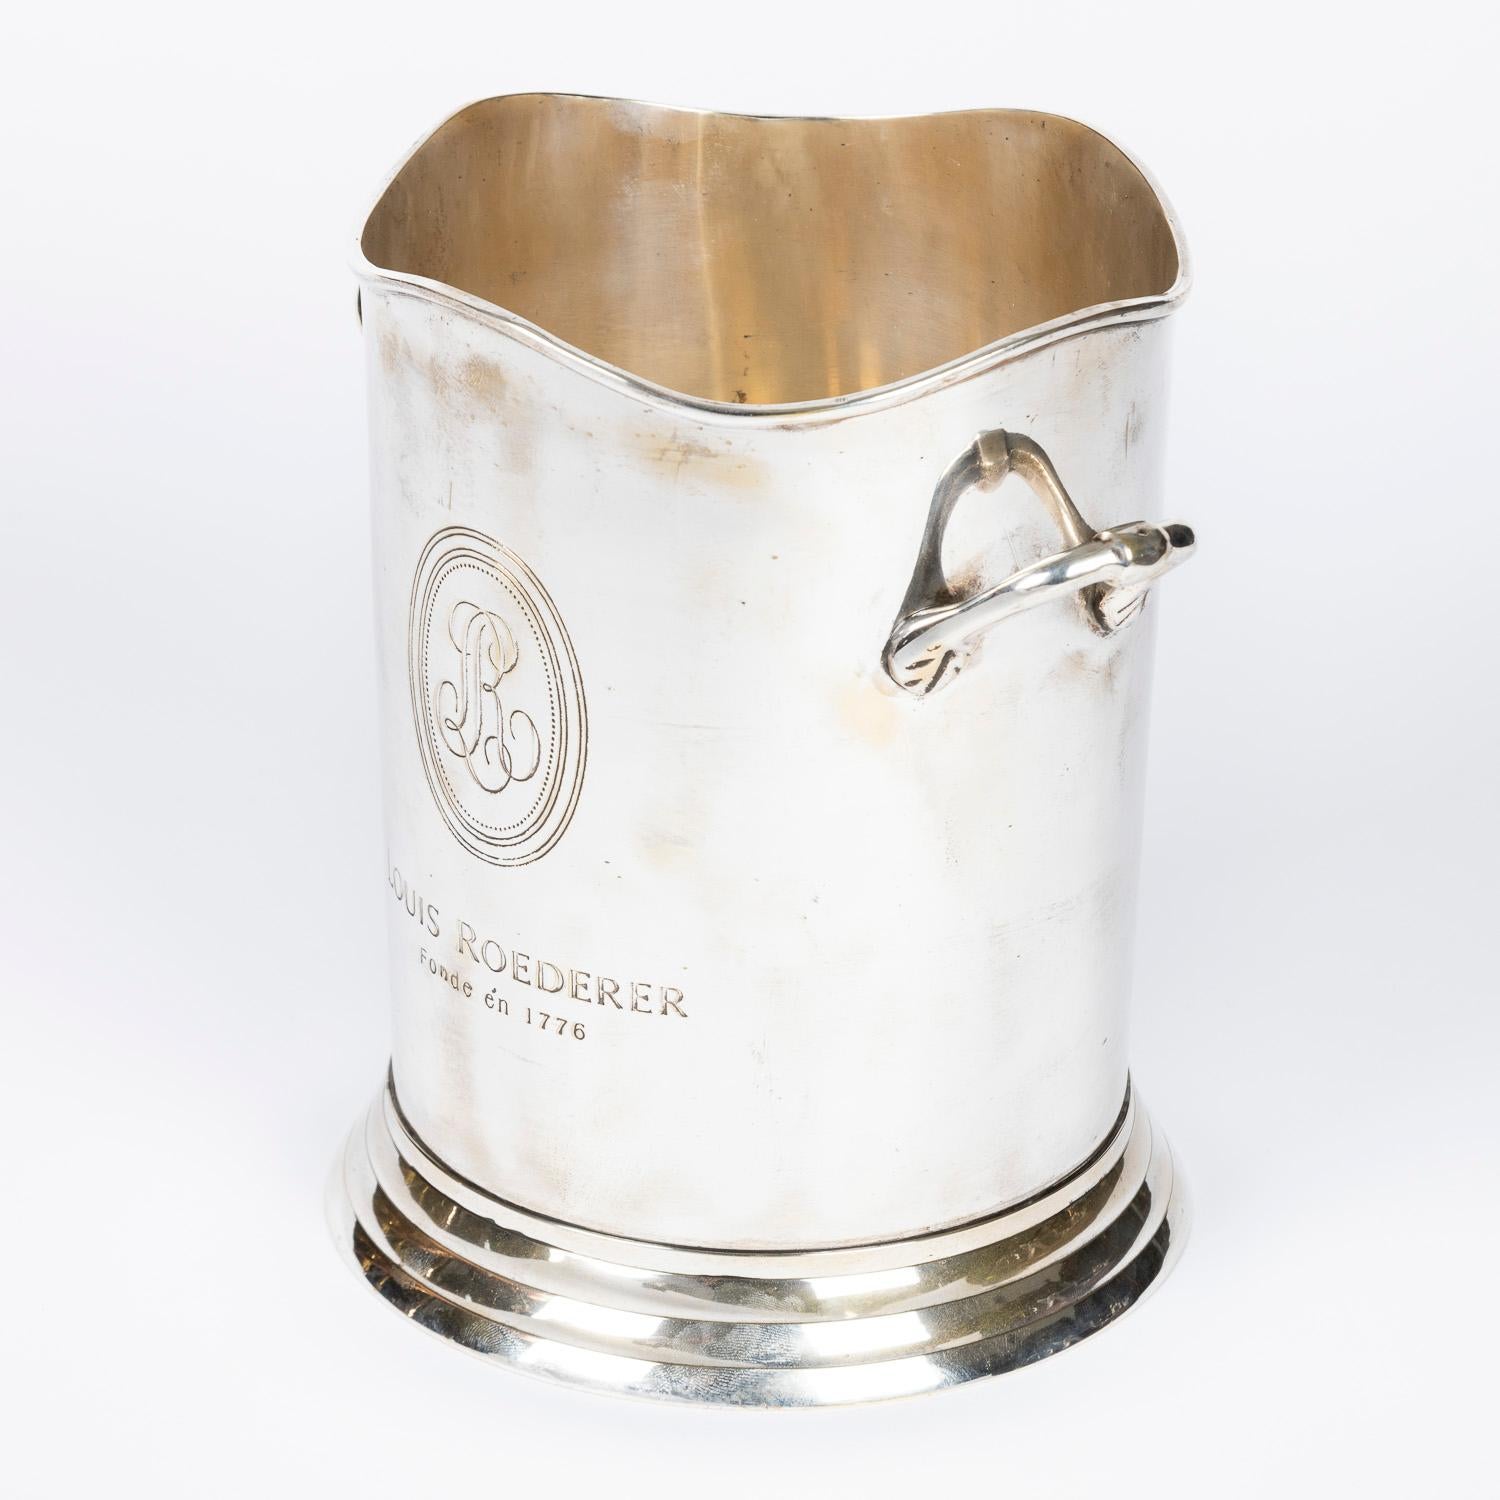 Ein versilberter Champagner-Eiskübel für Louis Roederer von James Deakin & Sons aus Sheffield.

Gezeichnet: LOUIS ROEDERER Fonde én 1776.

Mit der Marke von James Deakin & Sons of Sheffield auf der Unterseite des Sockels.

Die Flasche ist